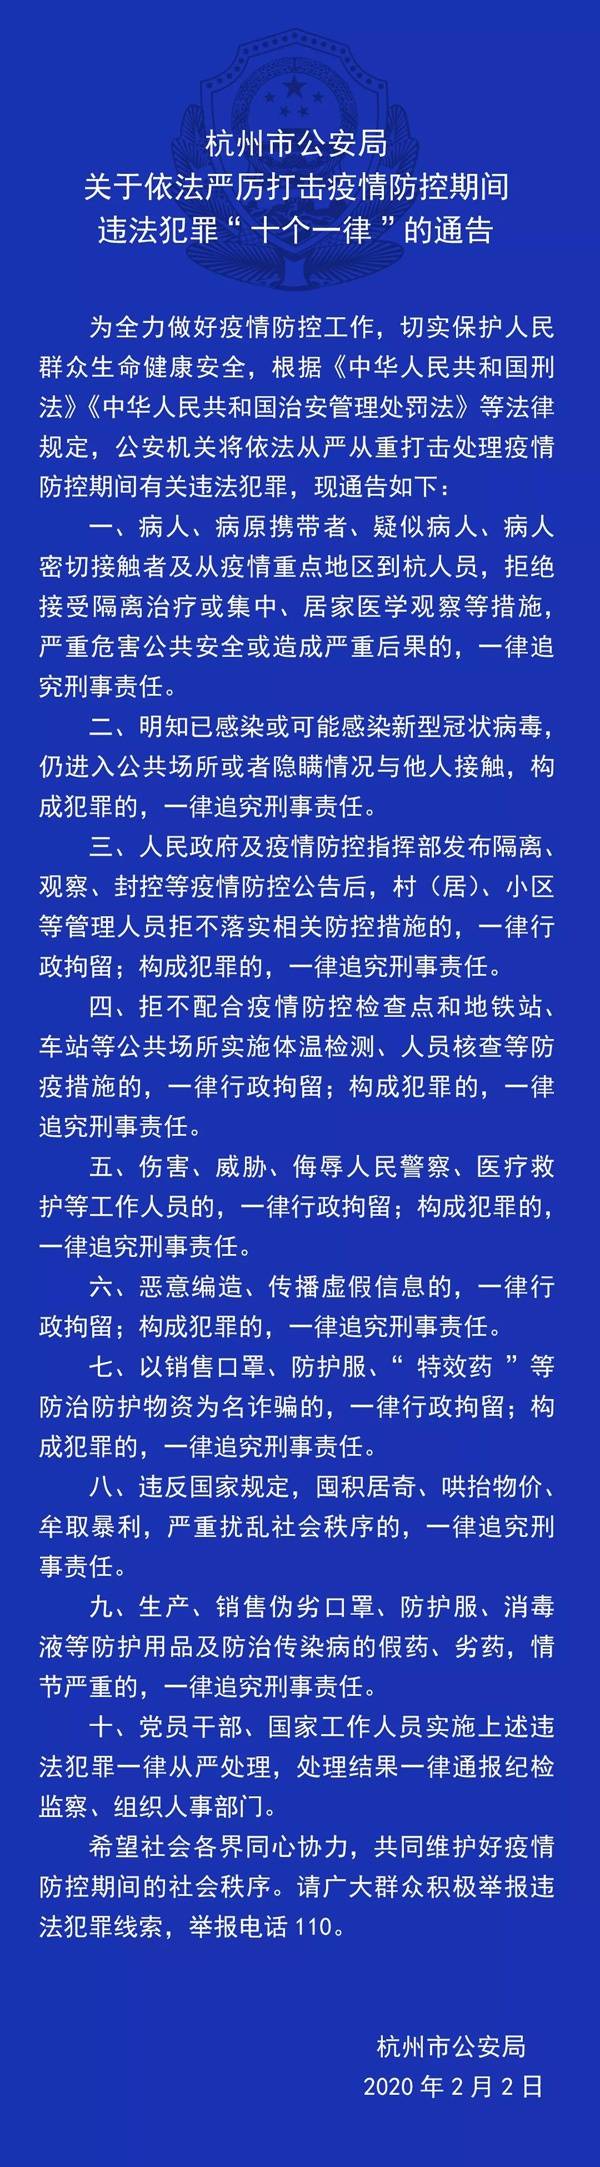 杭州警方发“十个一律”通告 严打疫情期违法犯罪